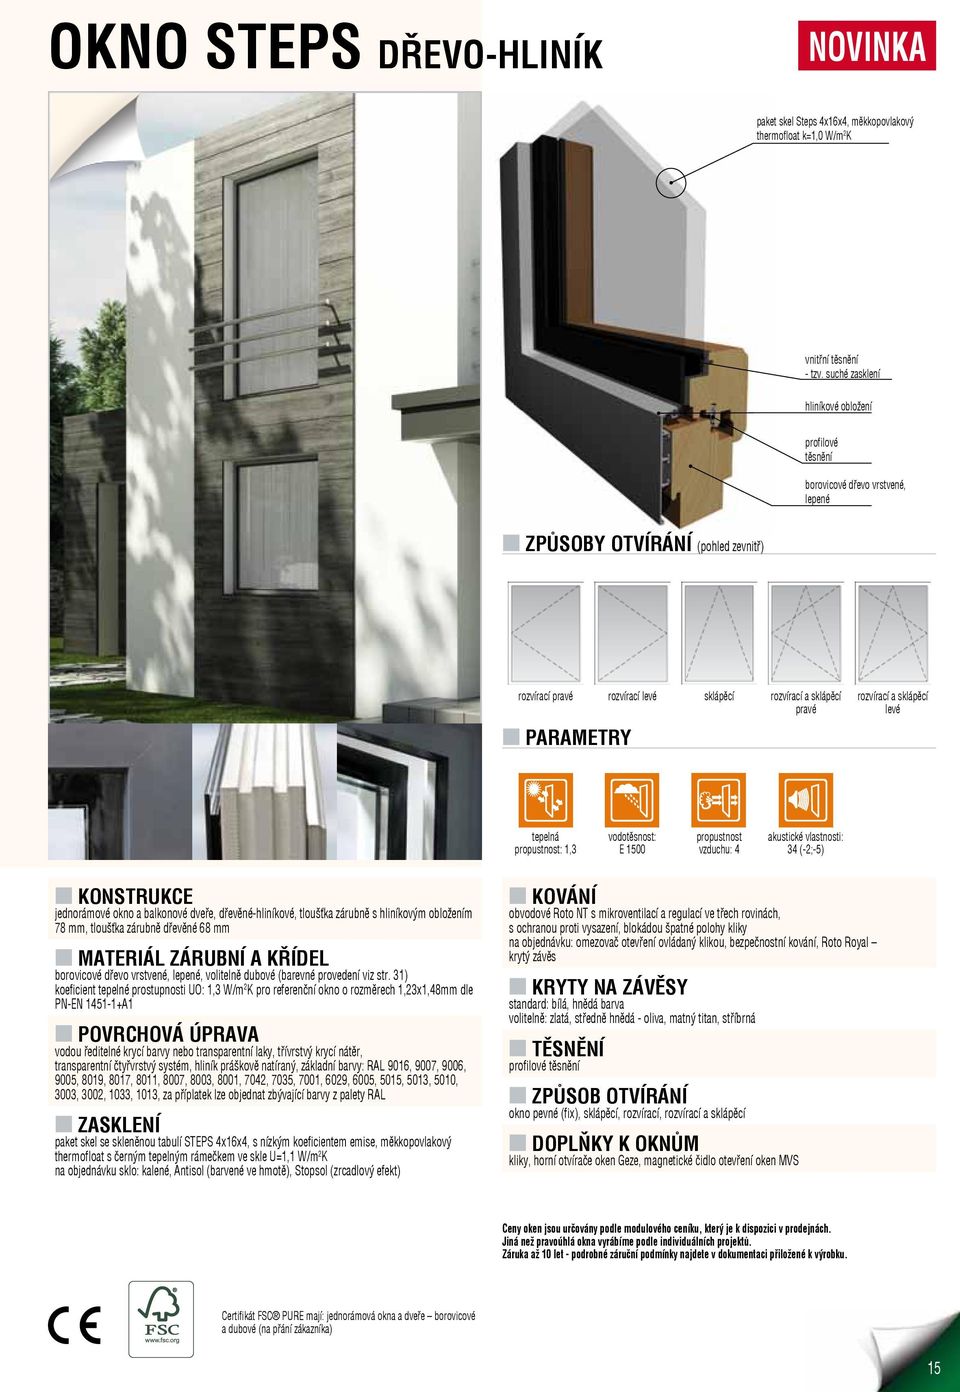 PARAMETRY rozvírací a sklápěcí levé tepelná propustnost: 1,3 vodotěsnost: E 1500 propustnost vzduchu: 4 akustické vlastnosti: 34 (-2;-5) jednorámové okno a balkonové dveře, dřevěné-hliníkové,